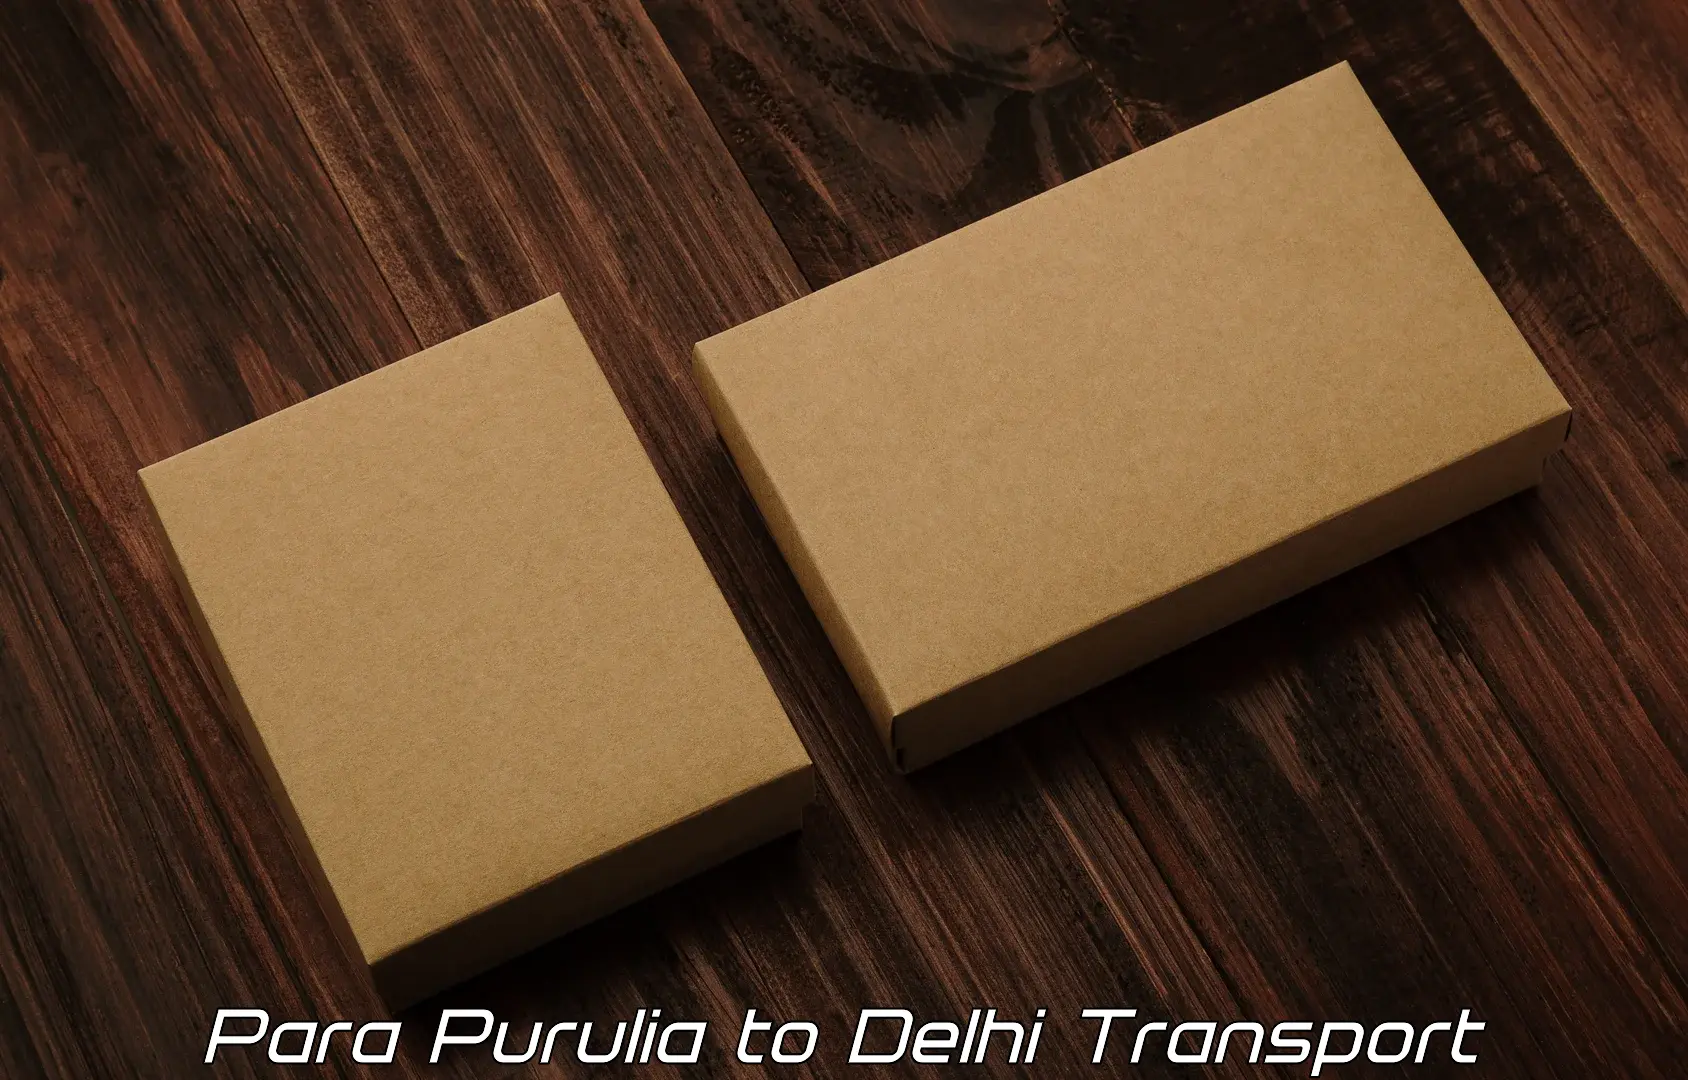 Daily transport service Para Purulia to Kalkaji